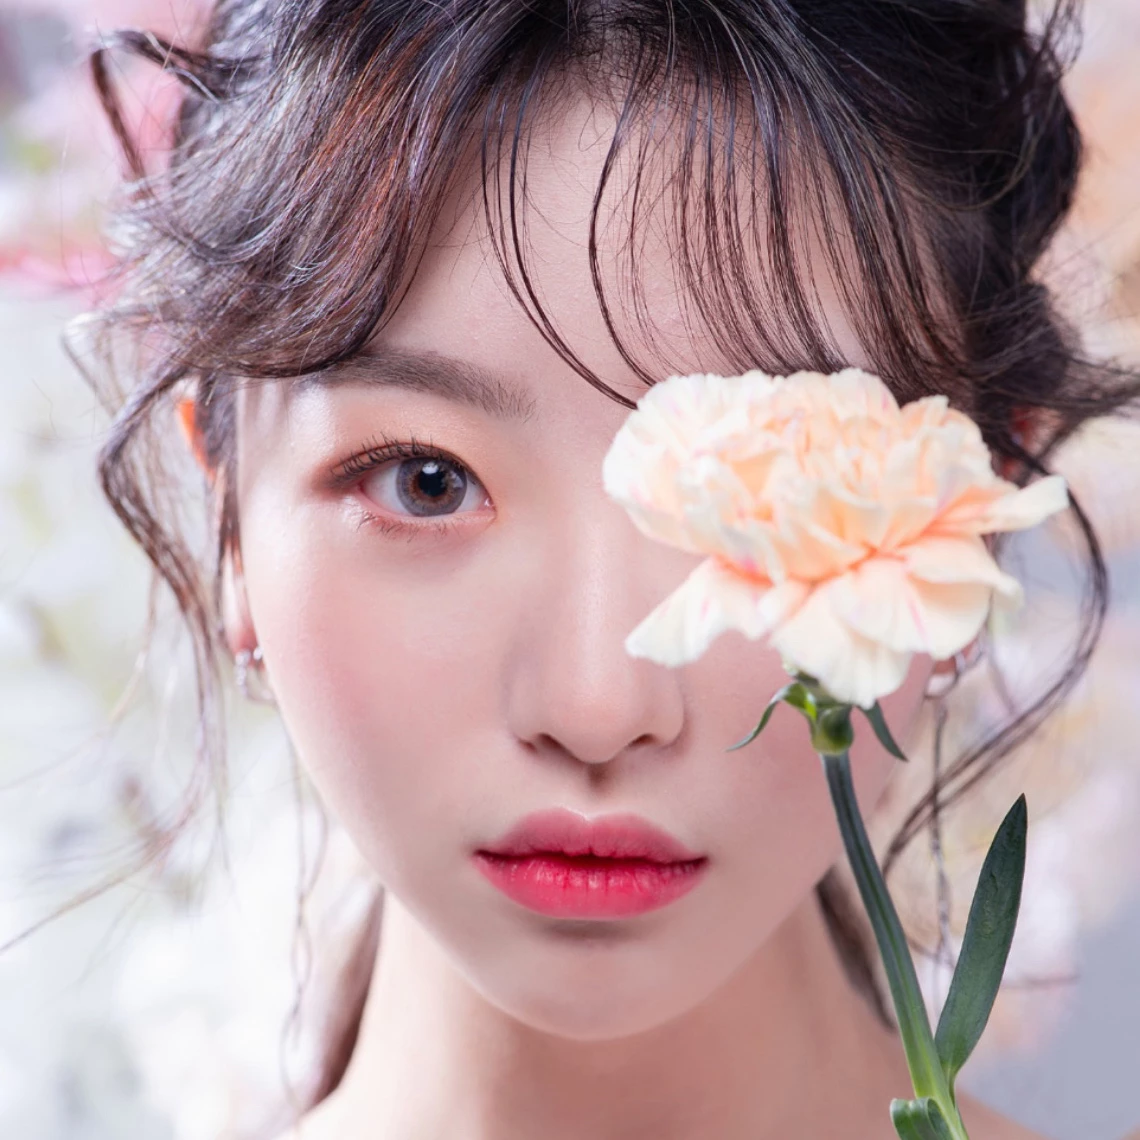 ศัลยกรรมพลาสติกที่ยอดเยี่ยมเกาหลี สาวเกาหลีสวยด้วยดอกไม้ปิดตาข้างเดียว